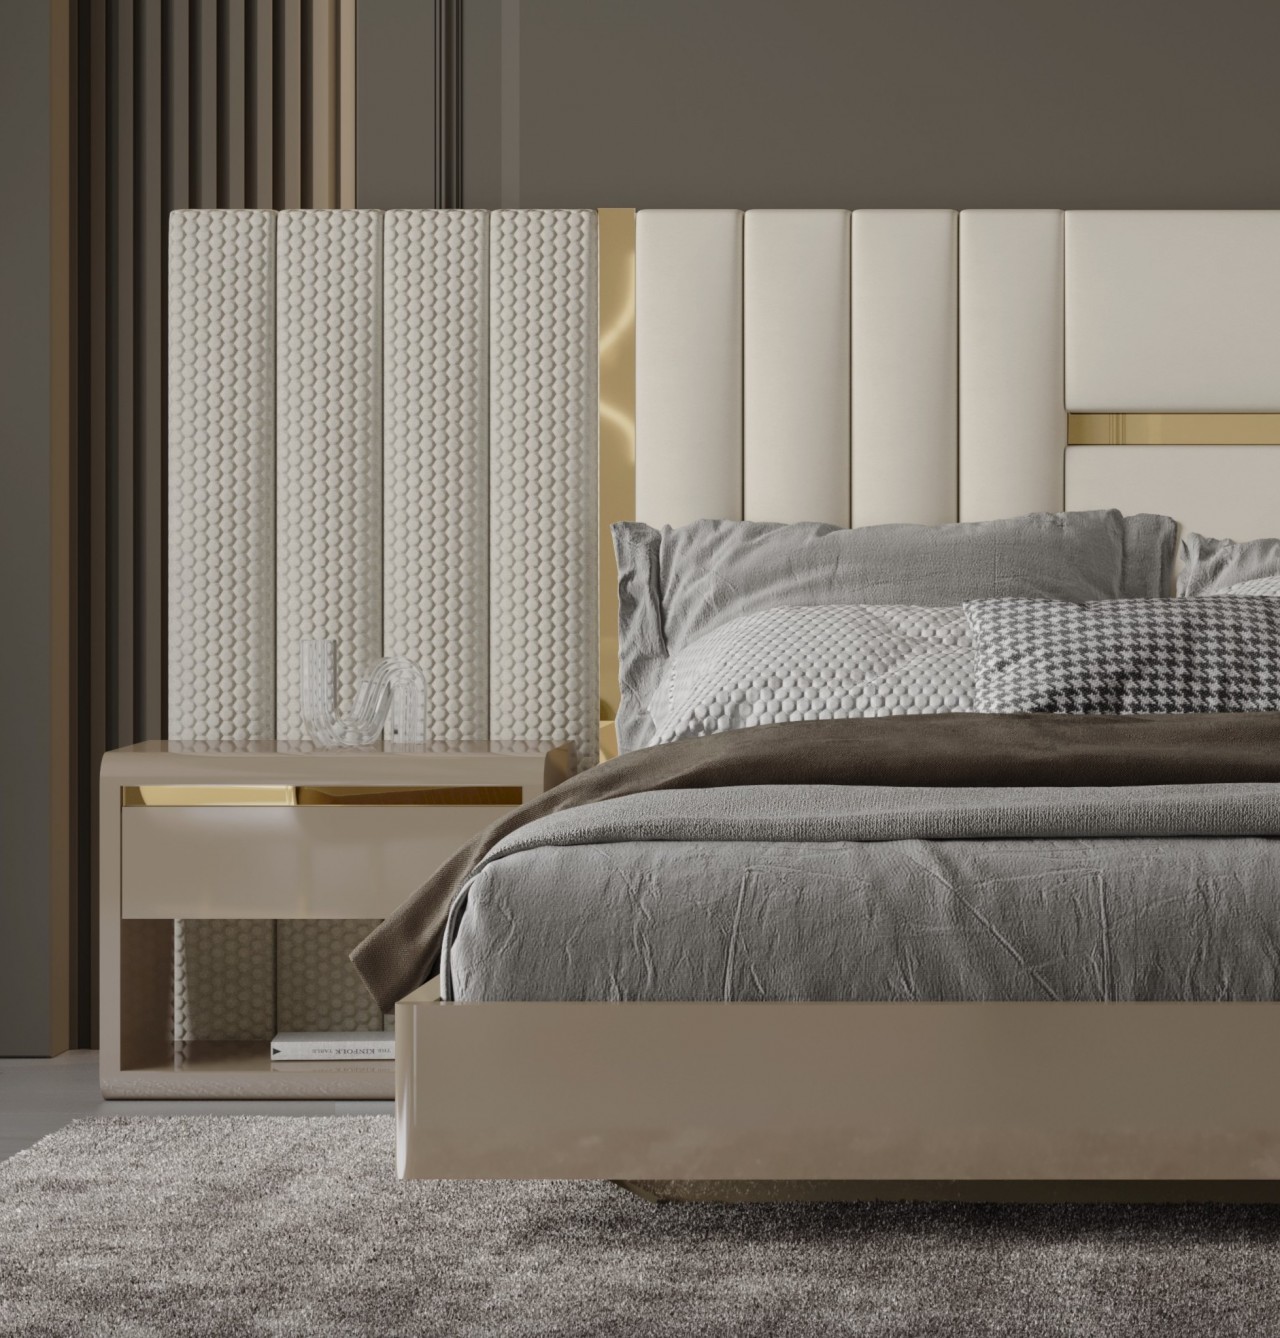 O sonho de um lar aconchegante começa com a cama de casal Alma Simple. Seu design moderno e acolhedor é o cenário perfeito para momentos únicos.